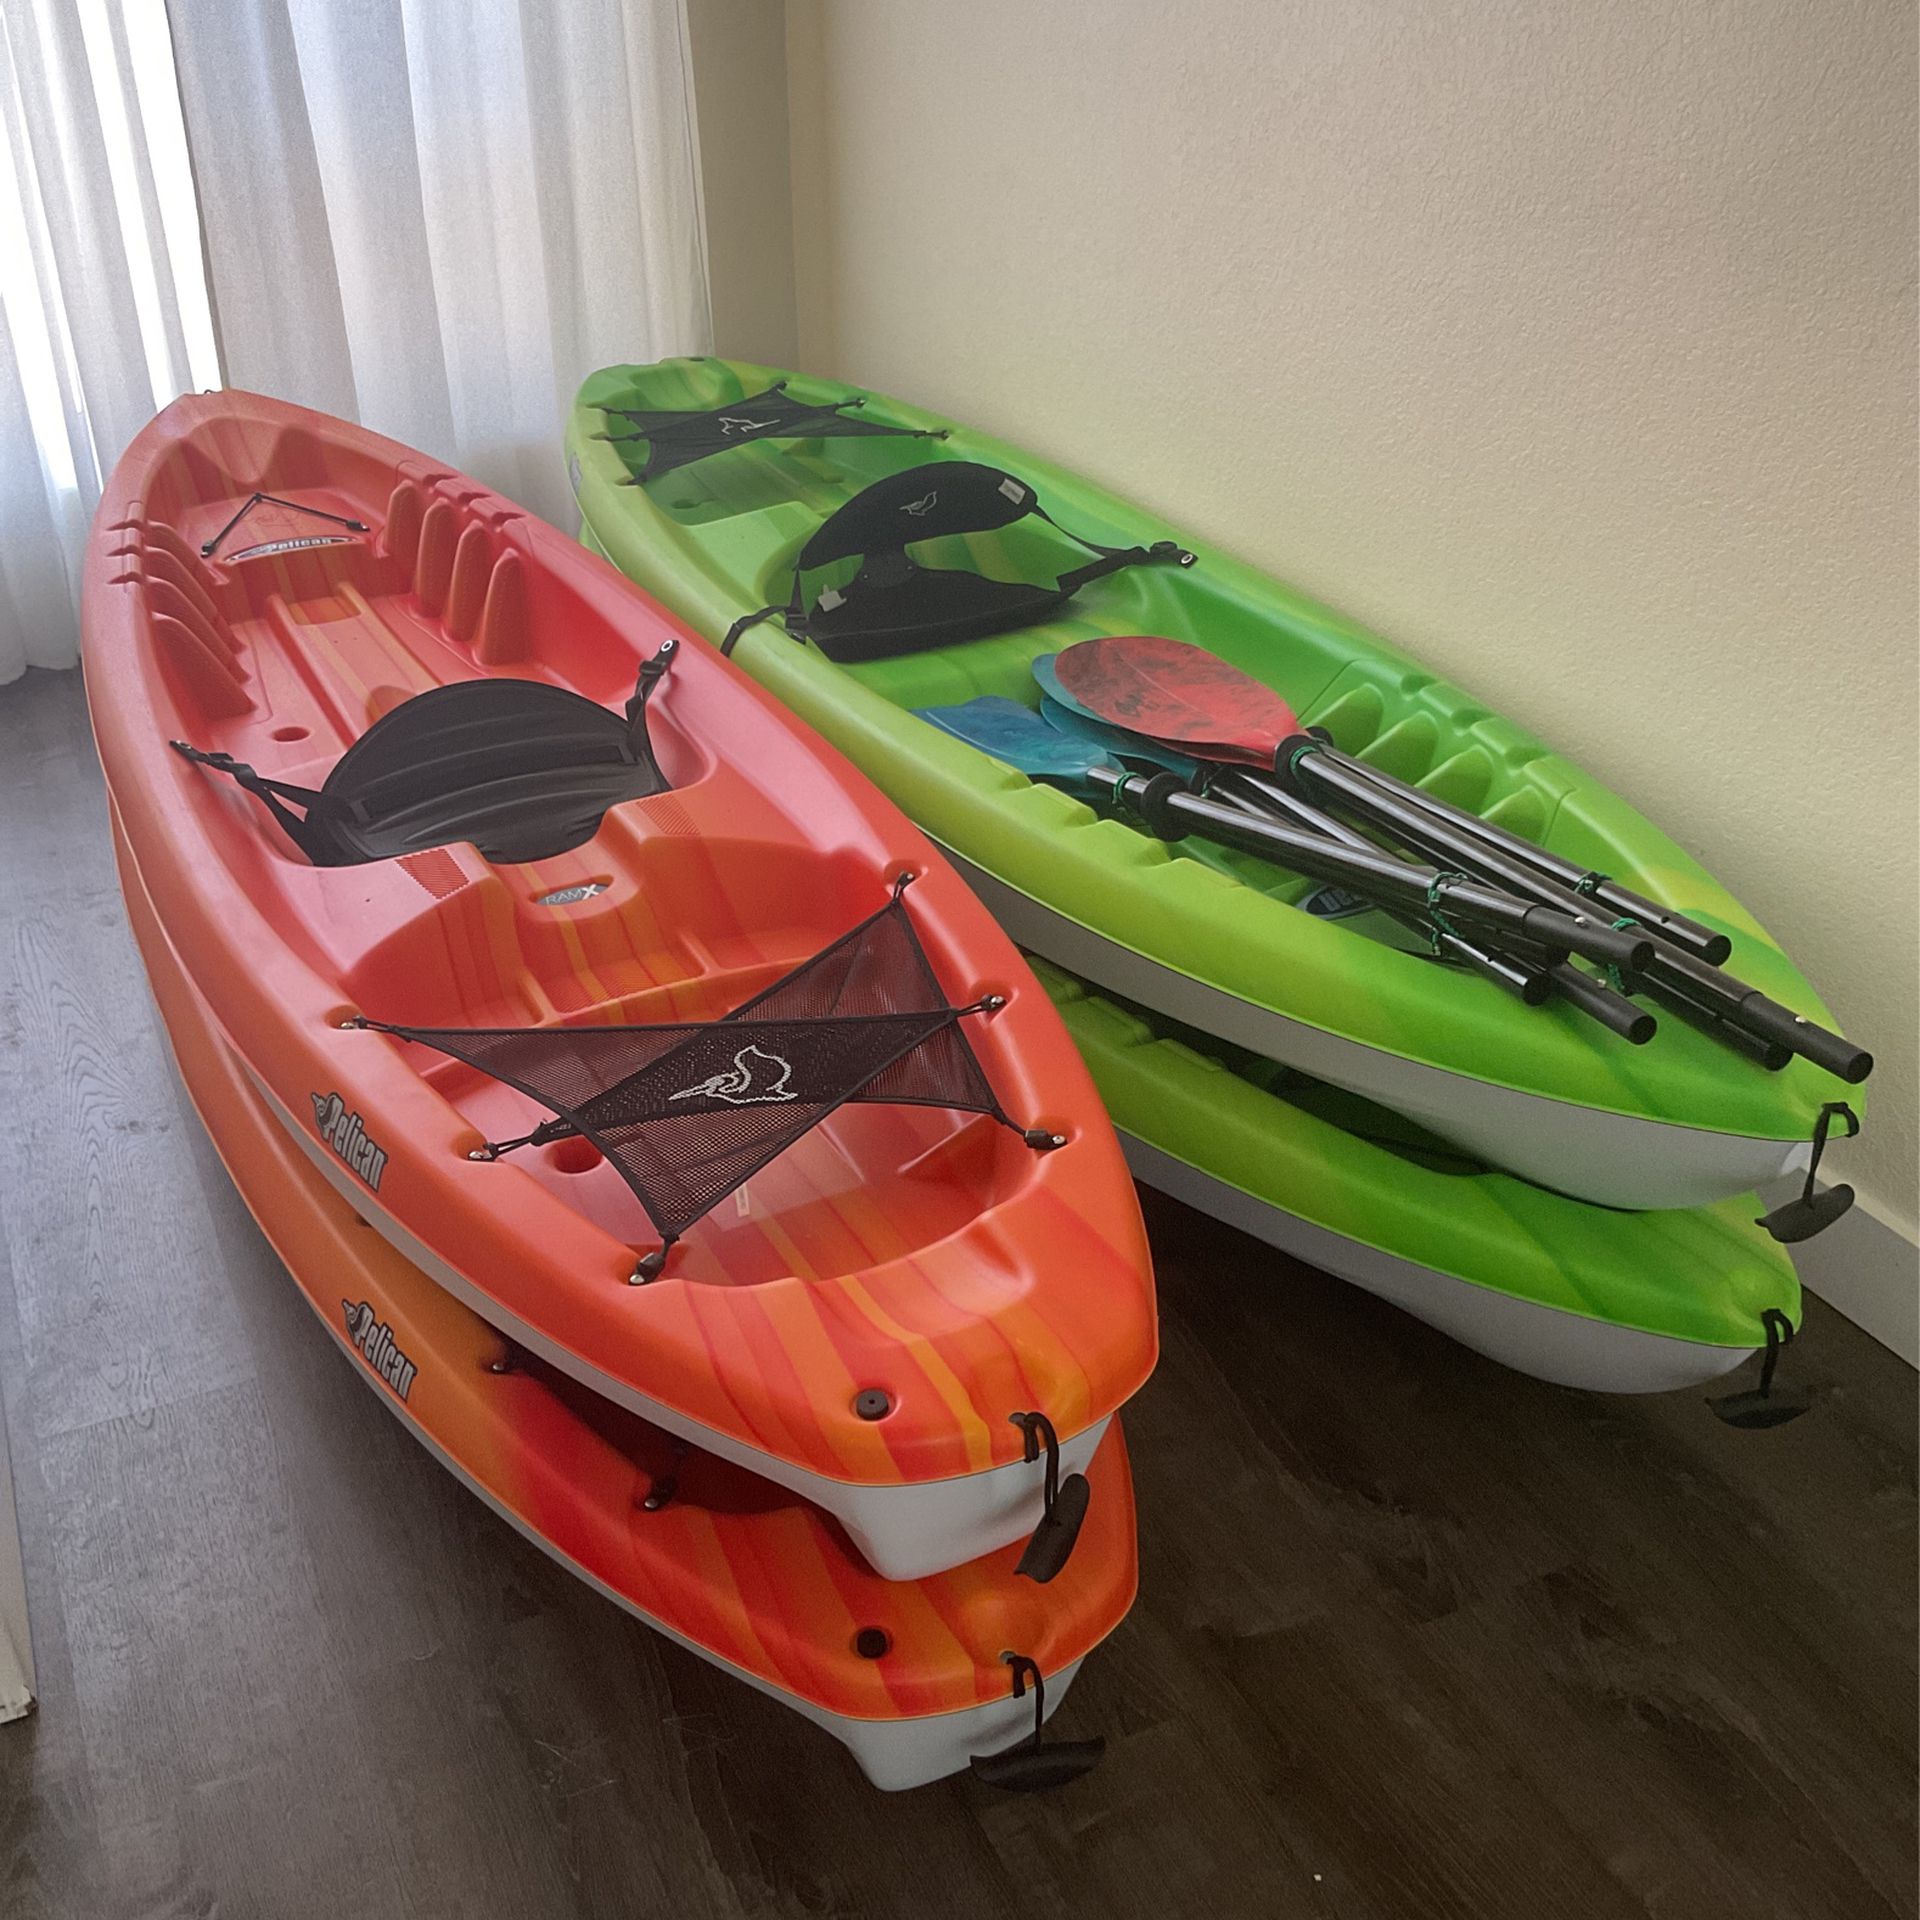 Bandit 100 nxt recreational kayak